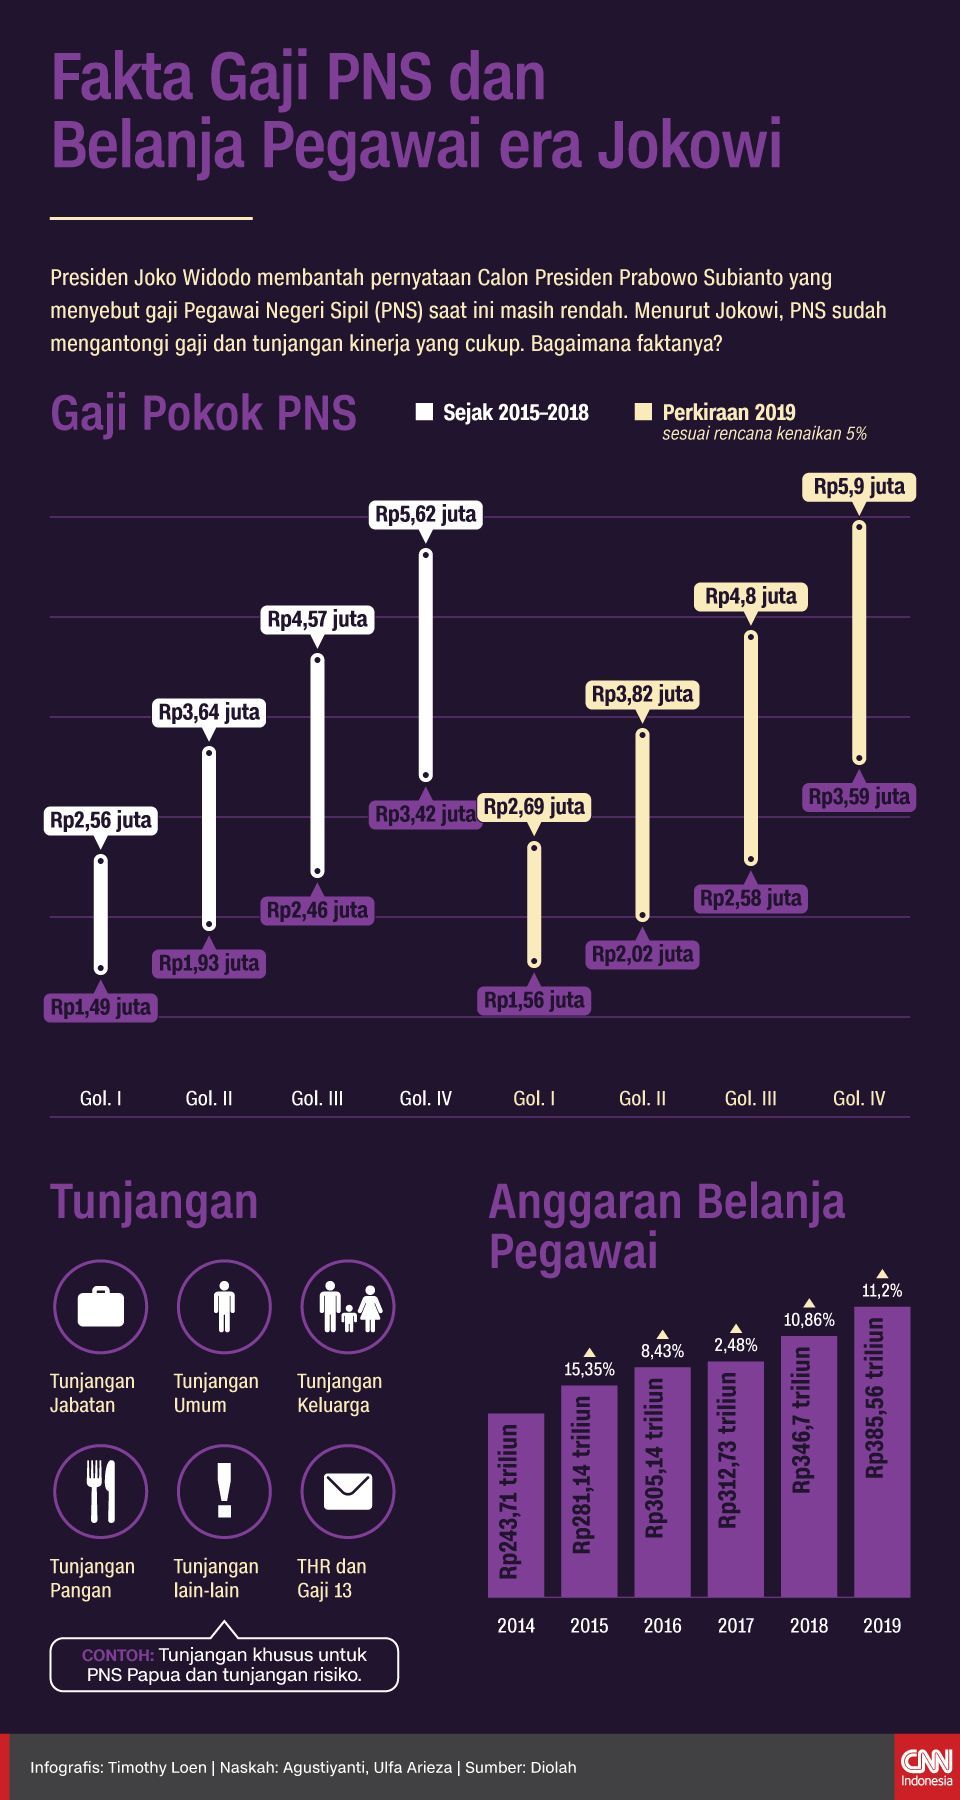 Infografis Fakta Gaji PNS dan Belanja Pegawai era Jokowi